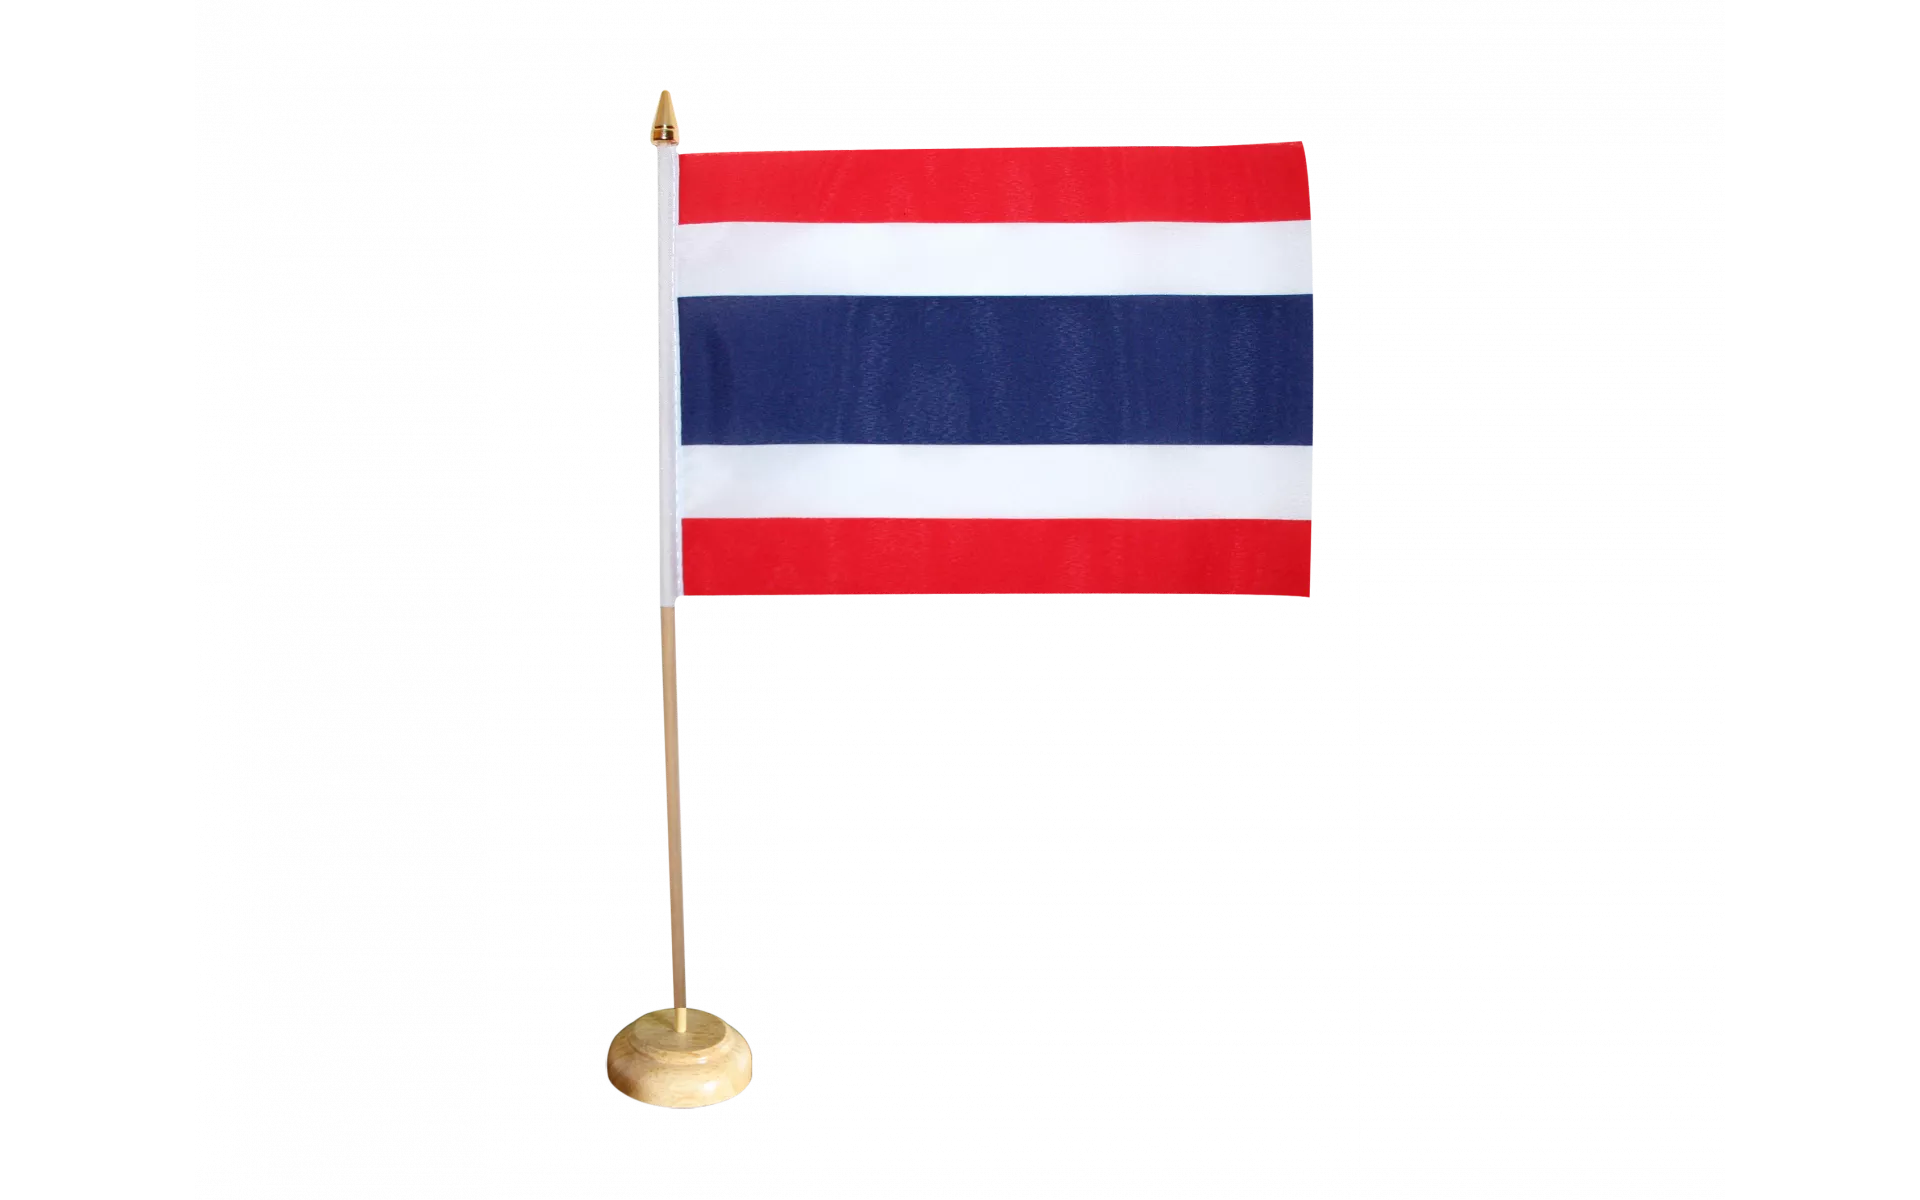 THAILÄNDISCHE TISCHFAHNE 14 x 21 cm flaggen AZ TISCHFLAGGE THAILAND 21x14cm 